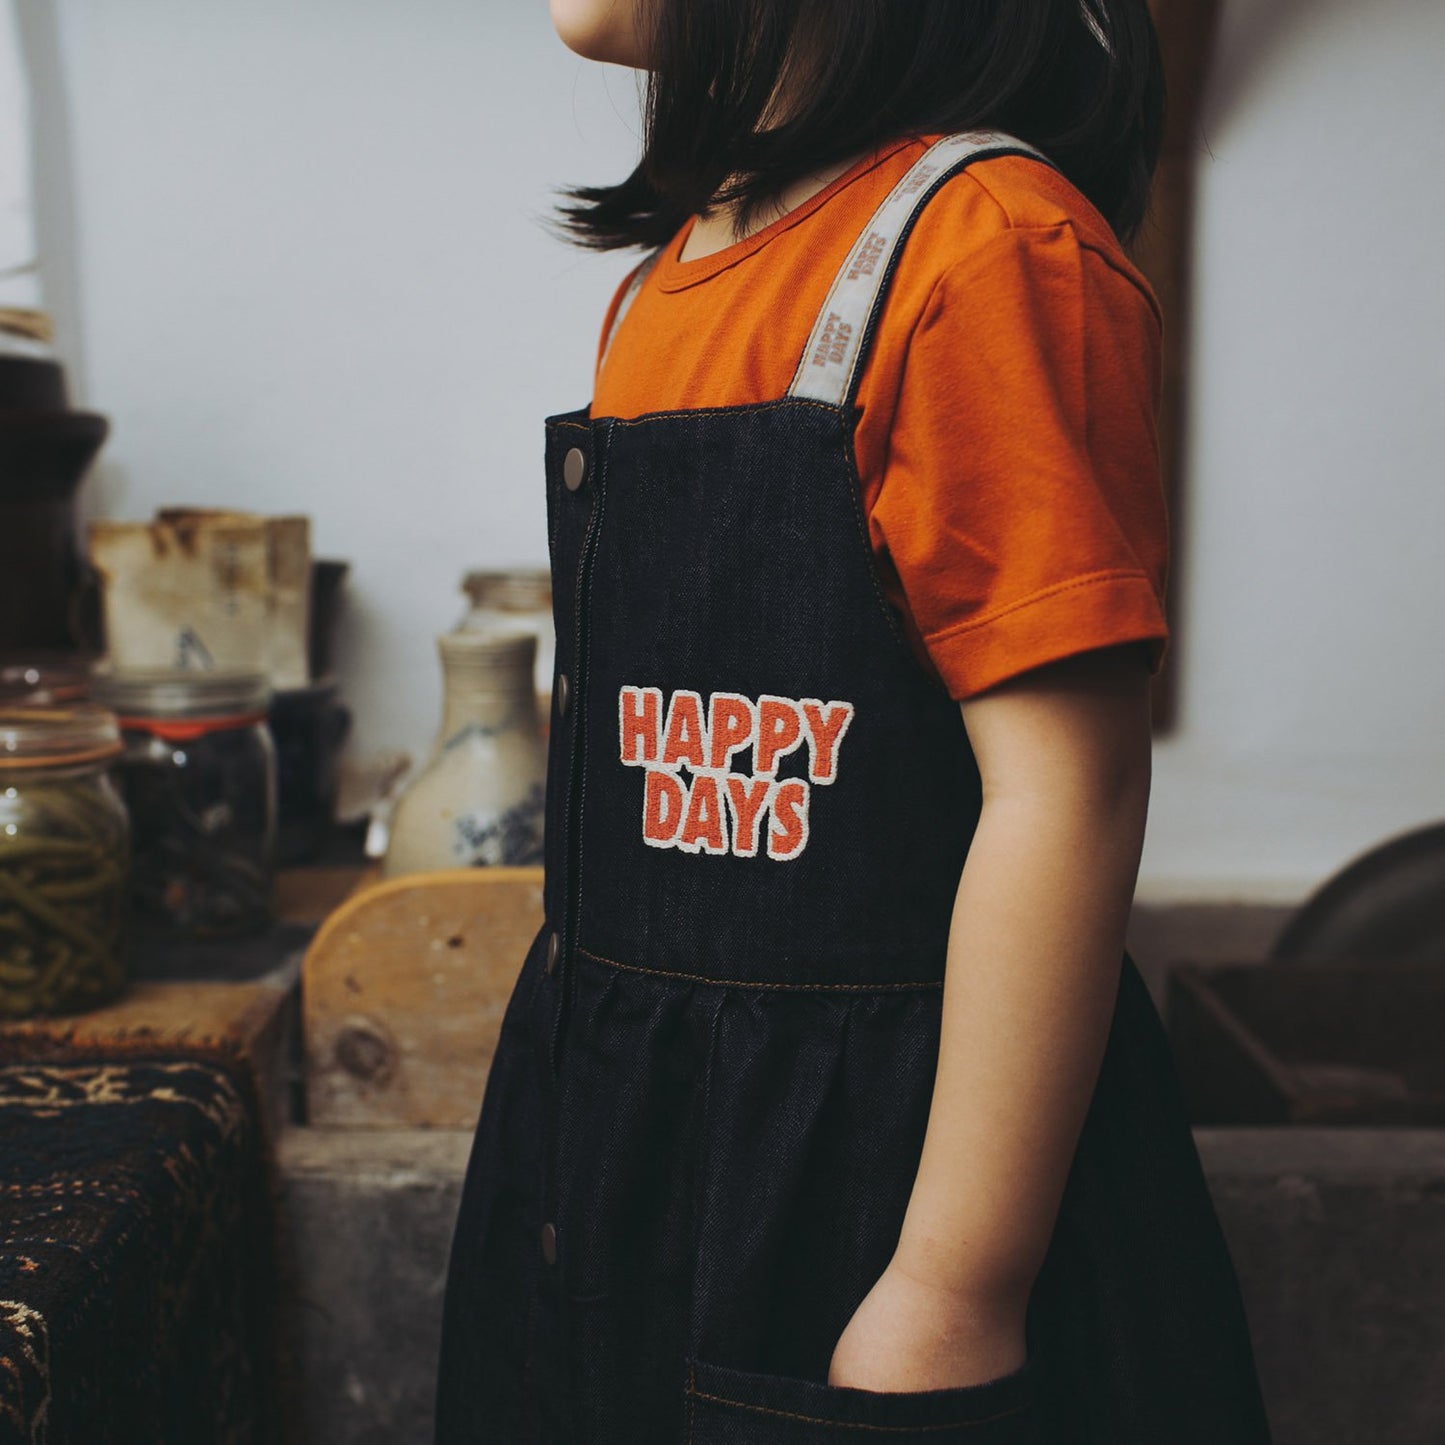 - Happy days - dress + embroidery (denim)